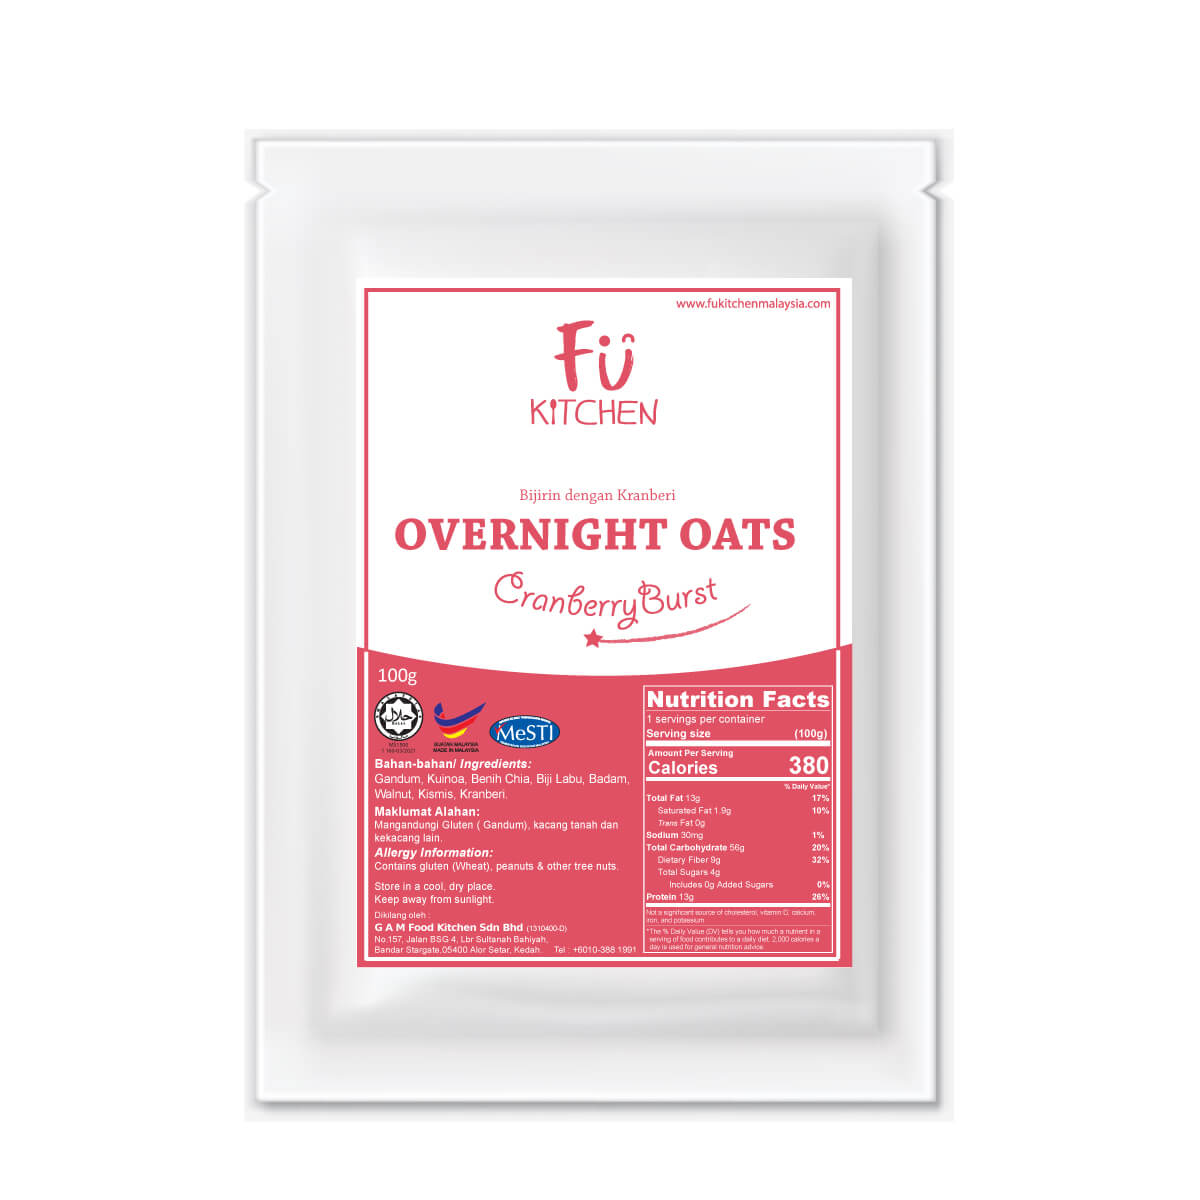 Overnight Oats Cranberry Burst (100g) - Fu Kitchen Malaysia